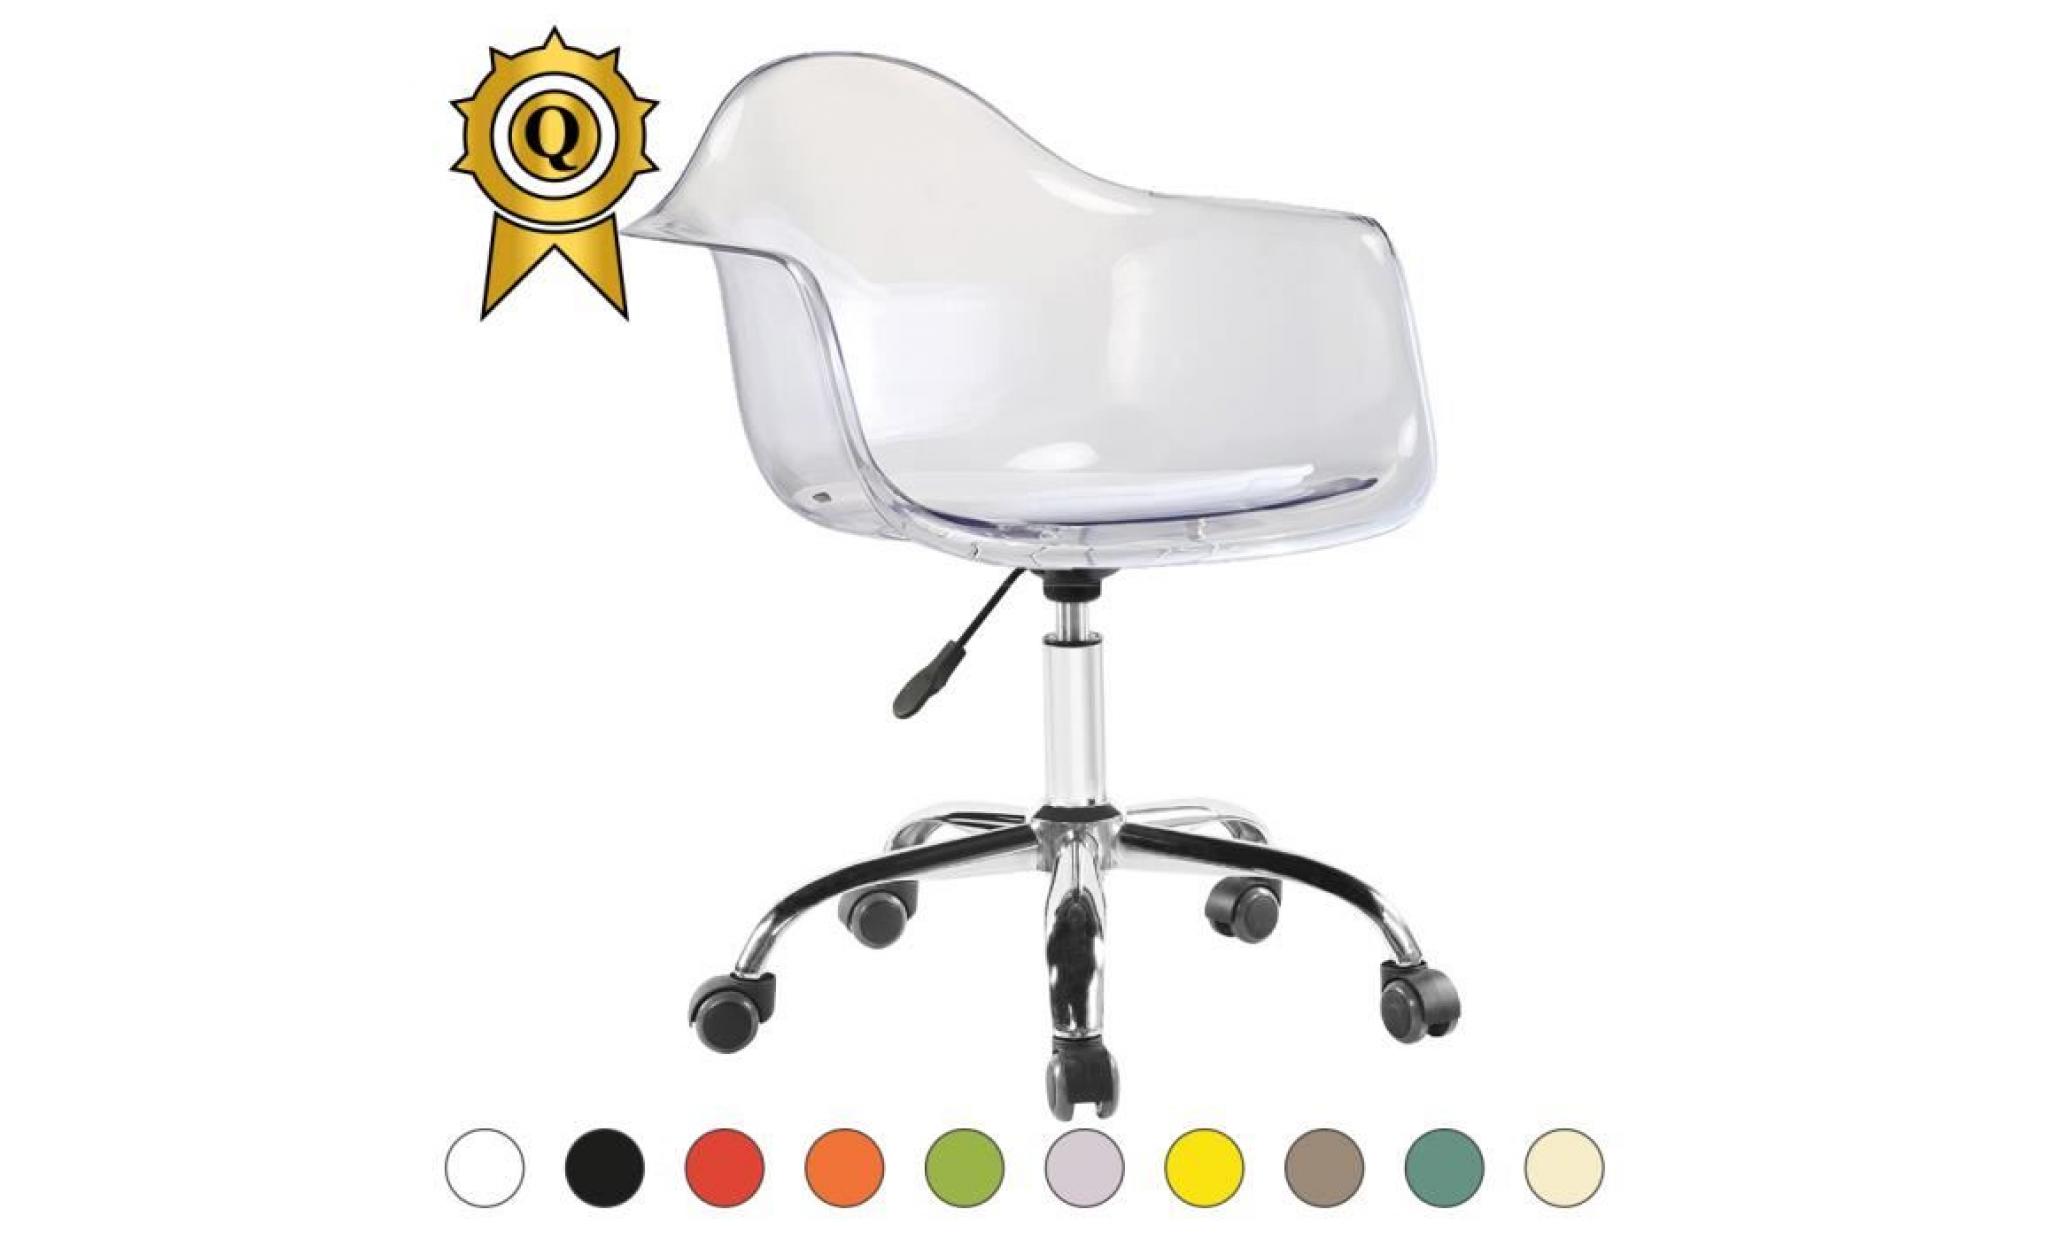 1 x fauteuil bureau style eames eiffel daw roulettes chrome pivotant assise reglable rose mobistyl®